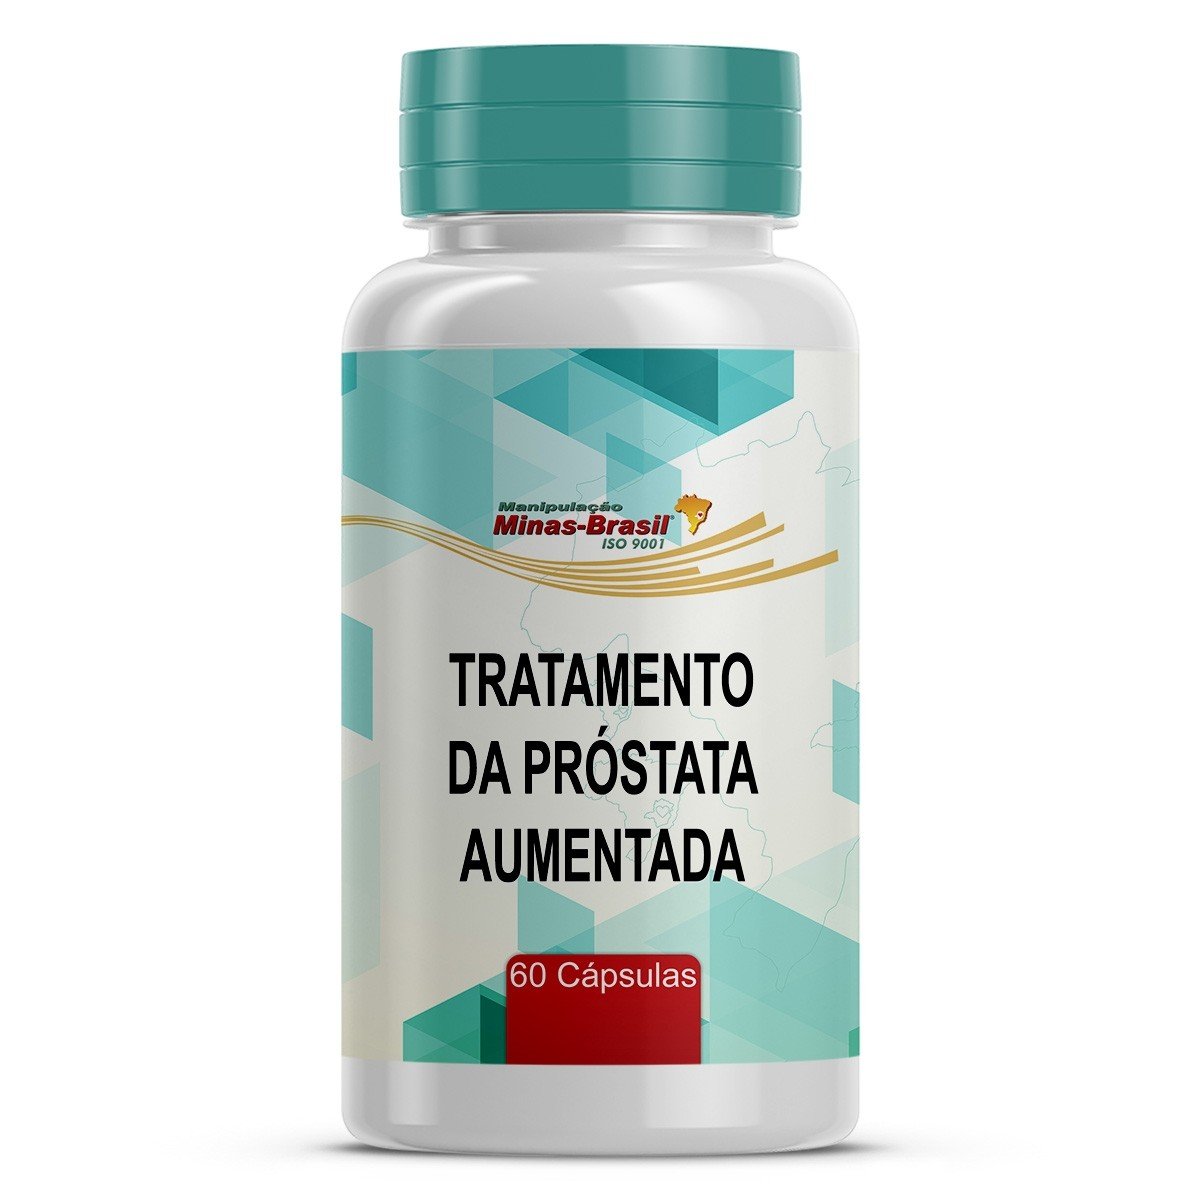 vitamine e prostata)